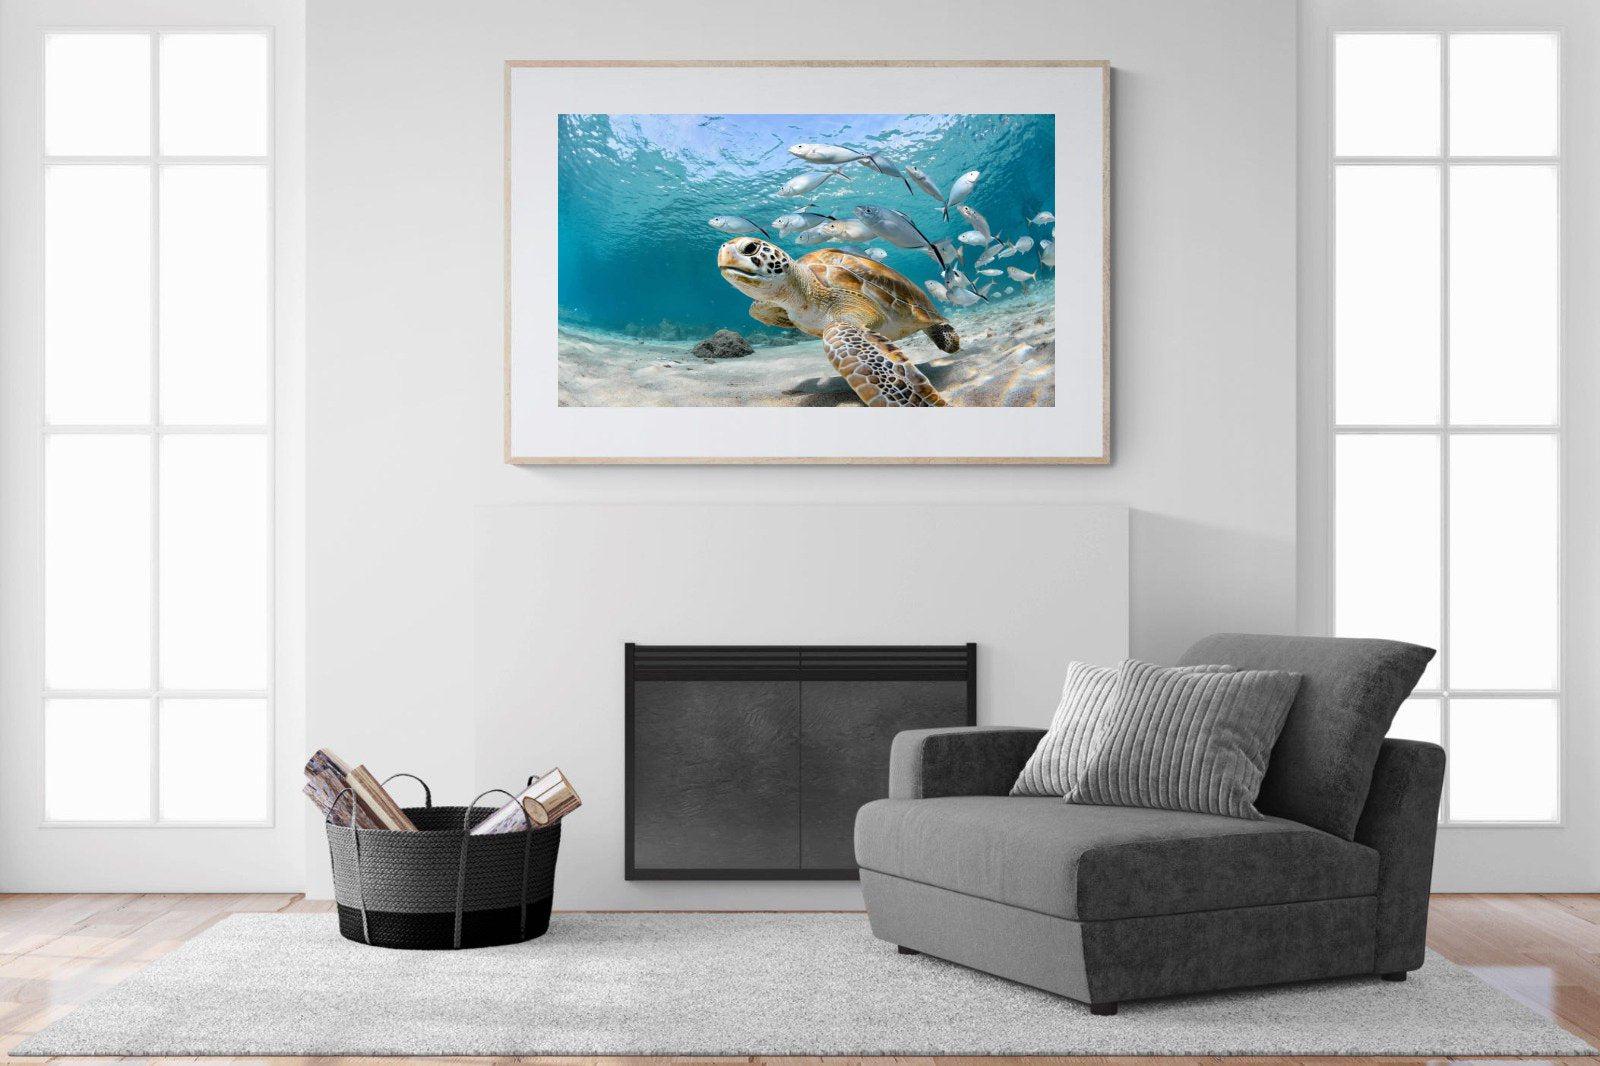 Turtle-Wall_Art-150 x 100cm-Framed Print-Wood-Pixalot